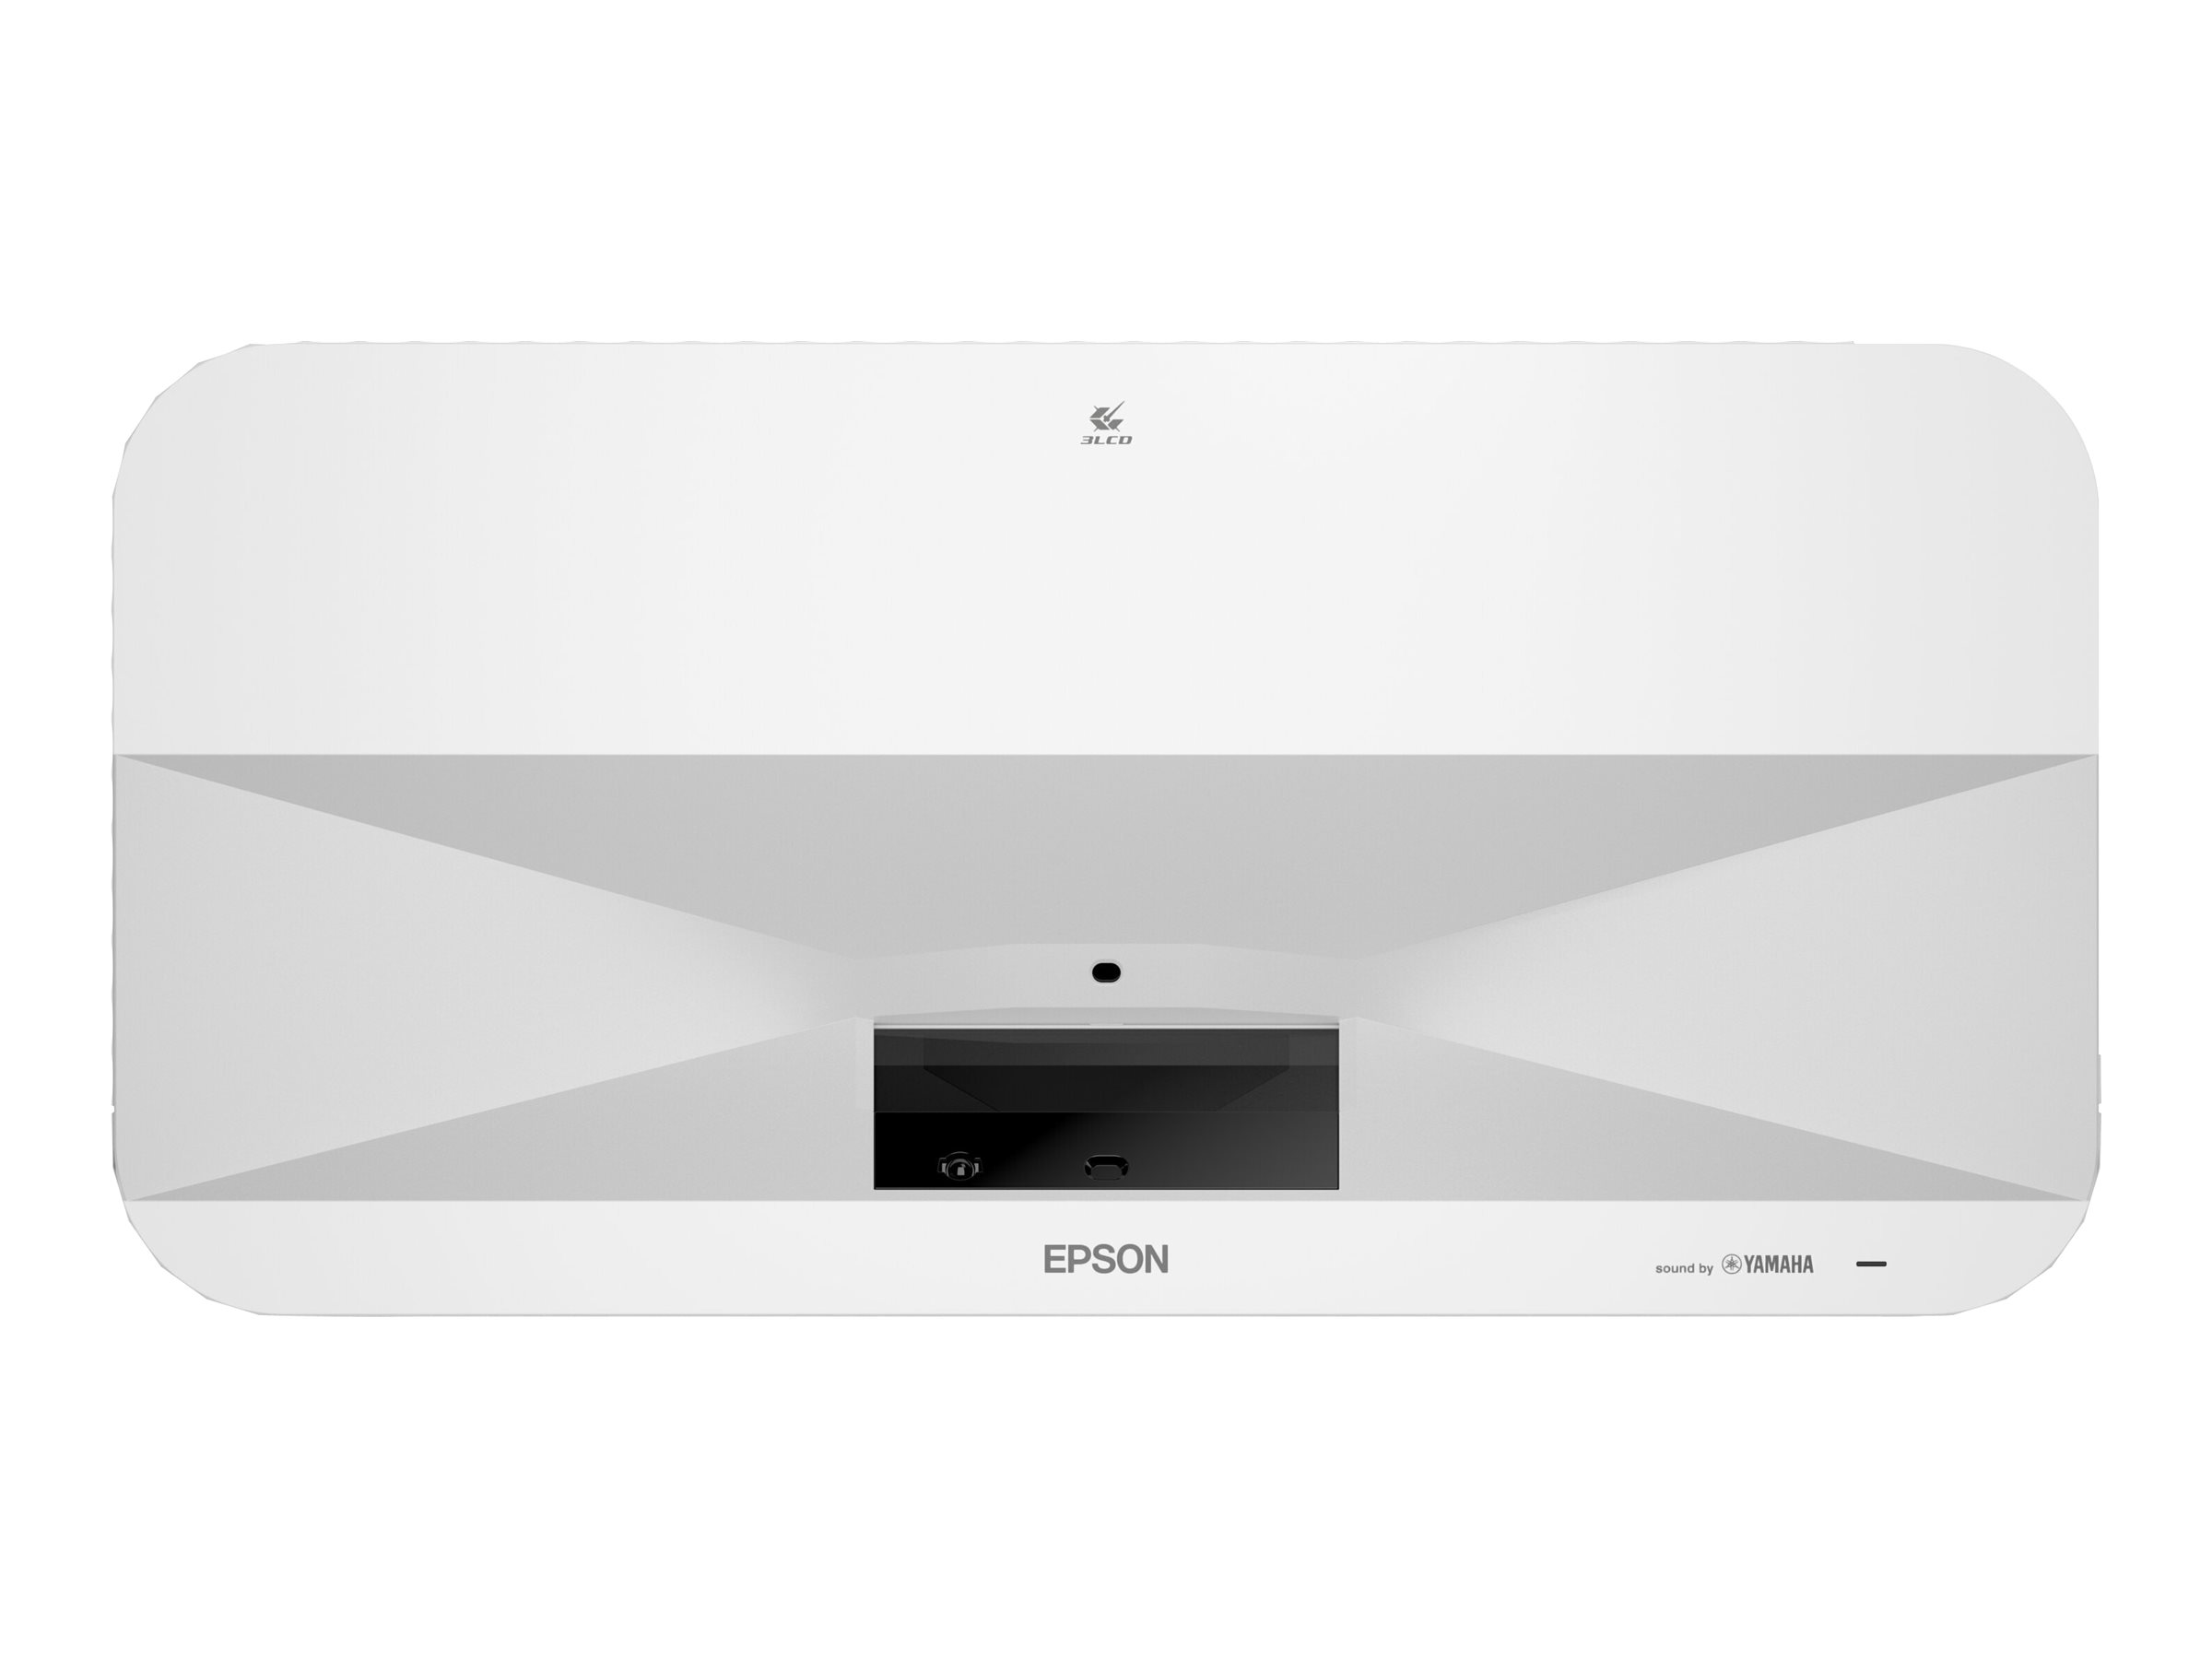 Epson EH-LS800W - Projecteur 3LCD - 4000 lumens (blanc) - 4000 lumens (couleur) - 3840 x 2160 (3 x 1920 x 1080) - 16:9 - 4K - objectif fixe à ultra courte focale - sans fil 802.11ac - blanc et noir - Android TV - V11HA90040 - Projecteurs pour home cinema